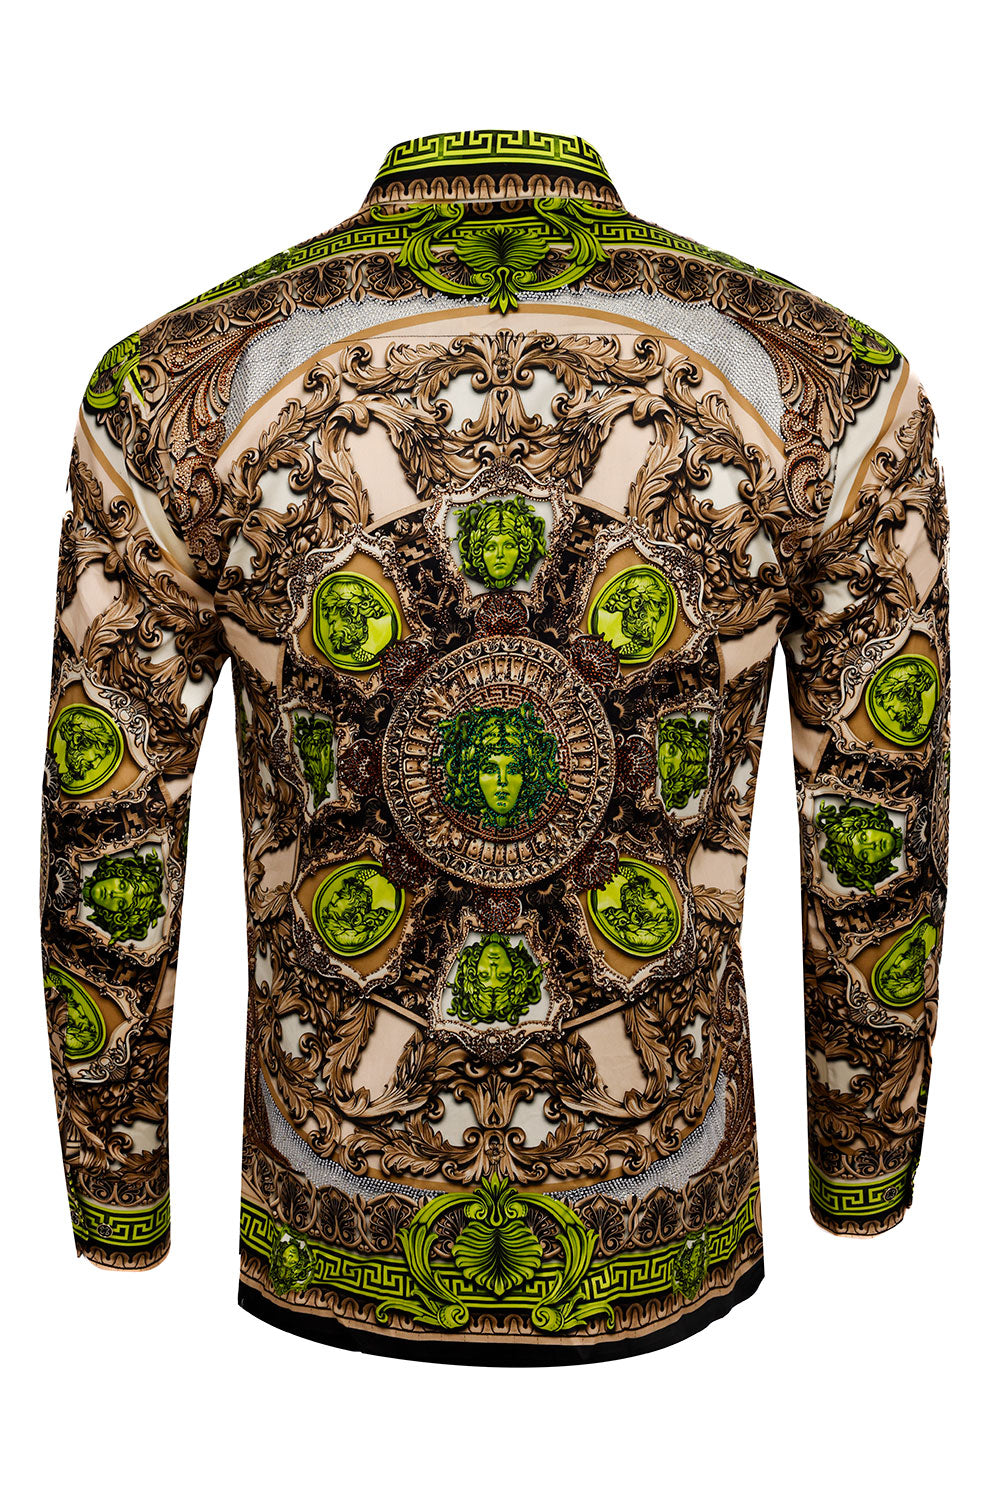 BARABAS Men's Rhinestone Medusa Floral Long Sleeve Shirts 3SPR416 Khaki